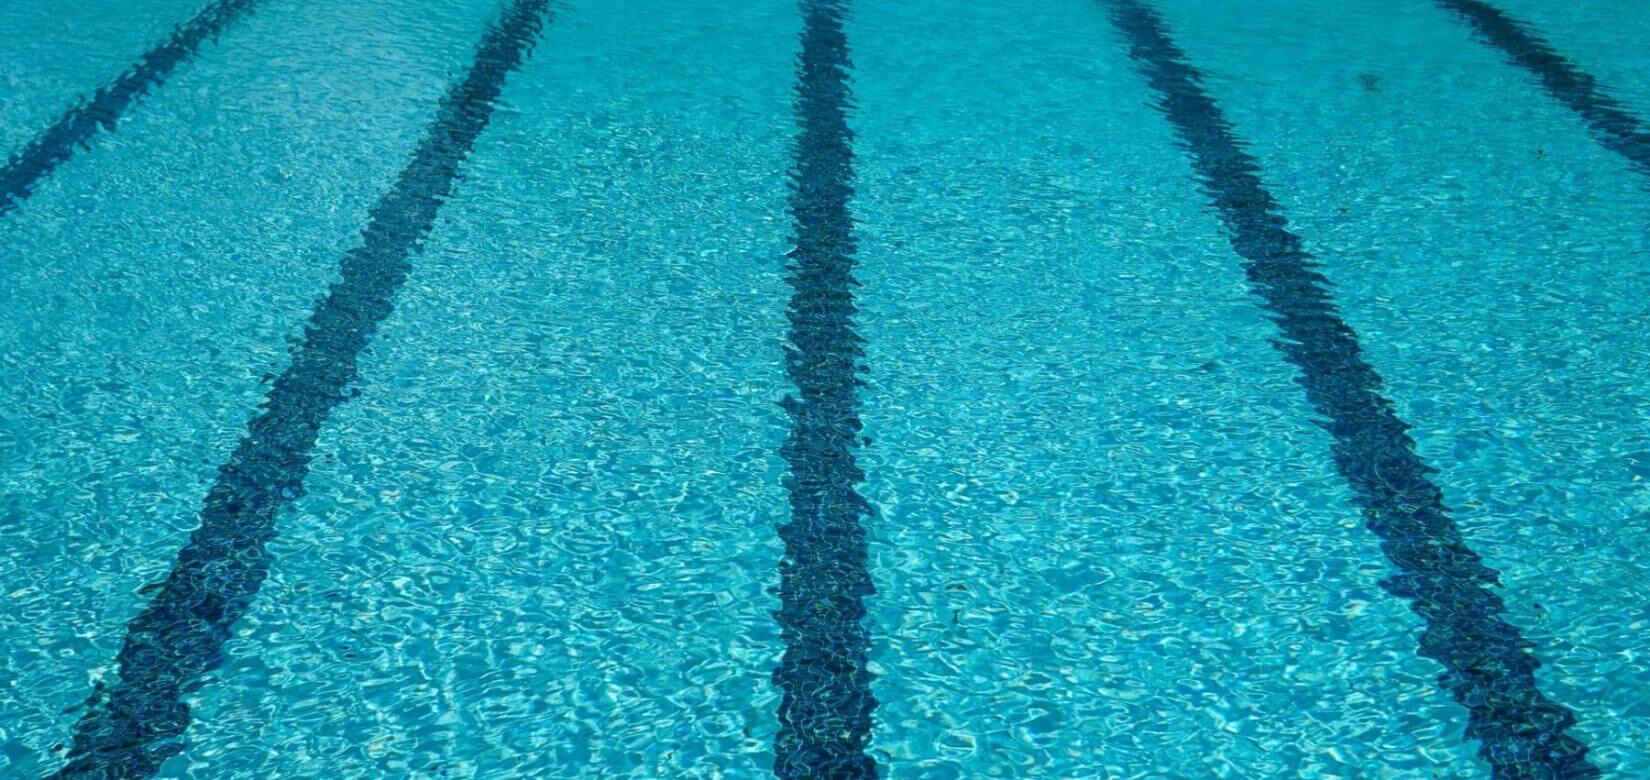 Πνίγηκε 3 χρονών παιδί σε πισίνα - Tραγωδία στην Κεφαλονιά